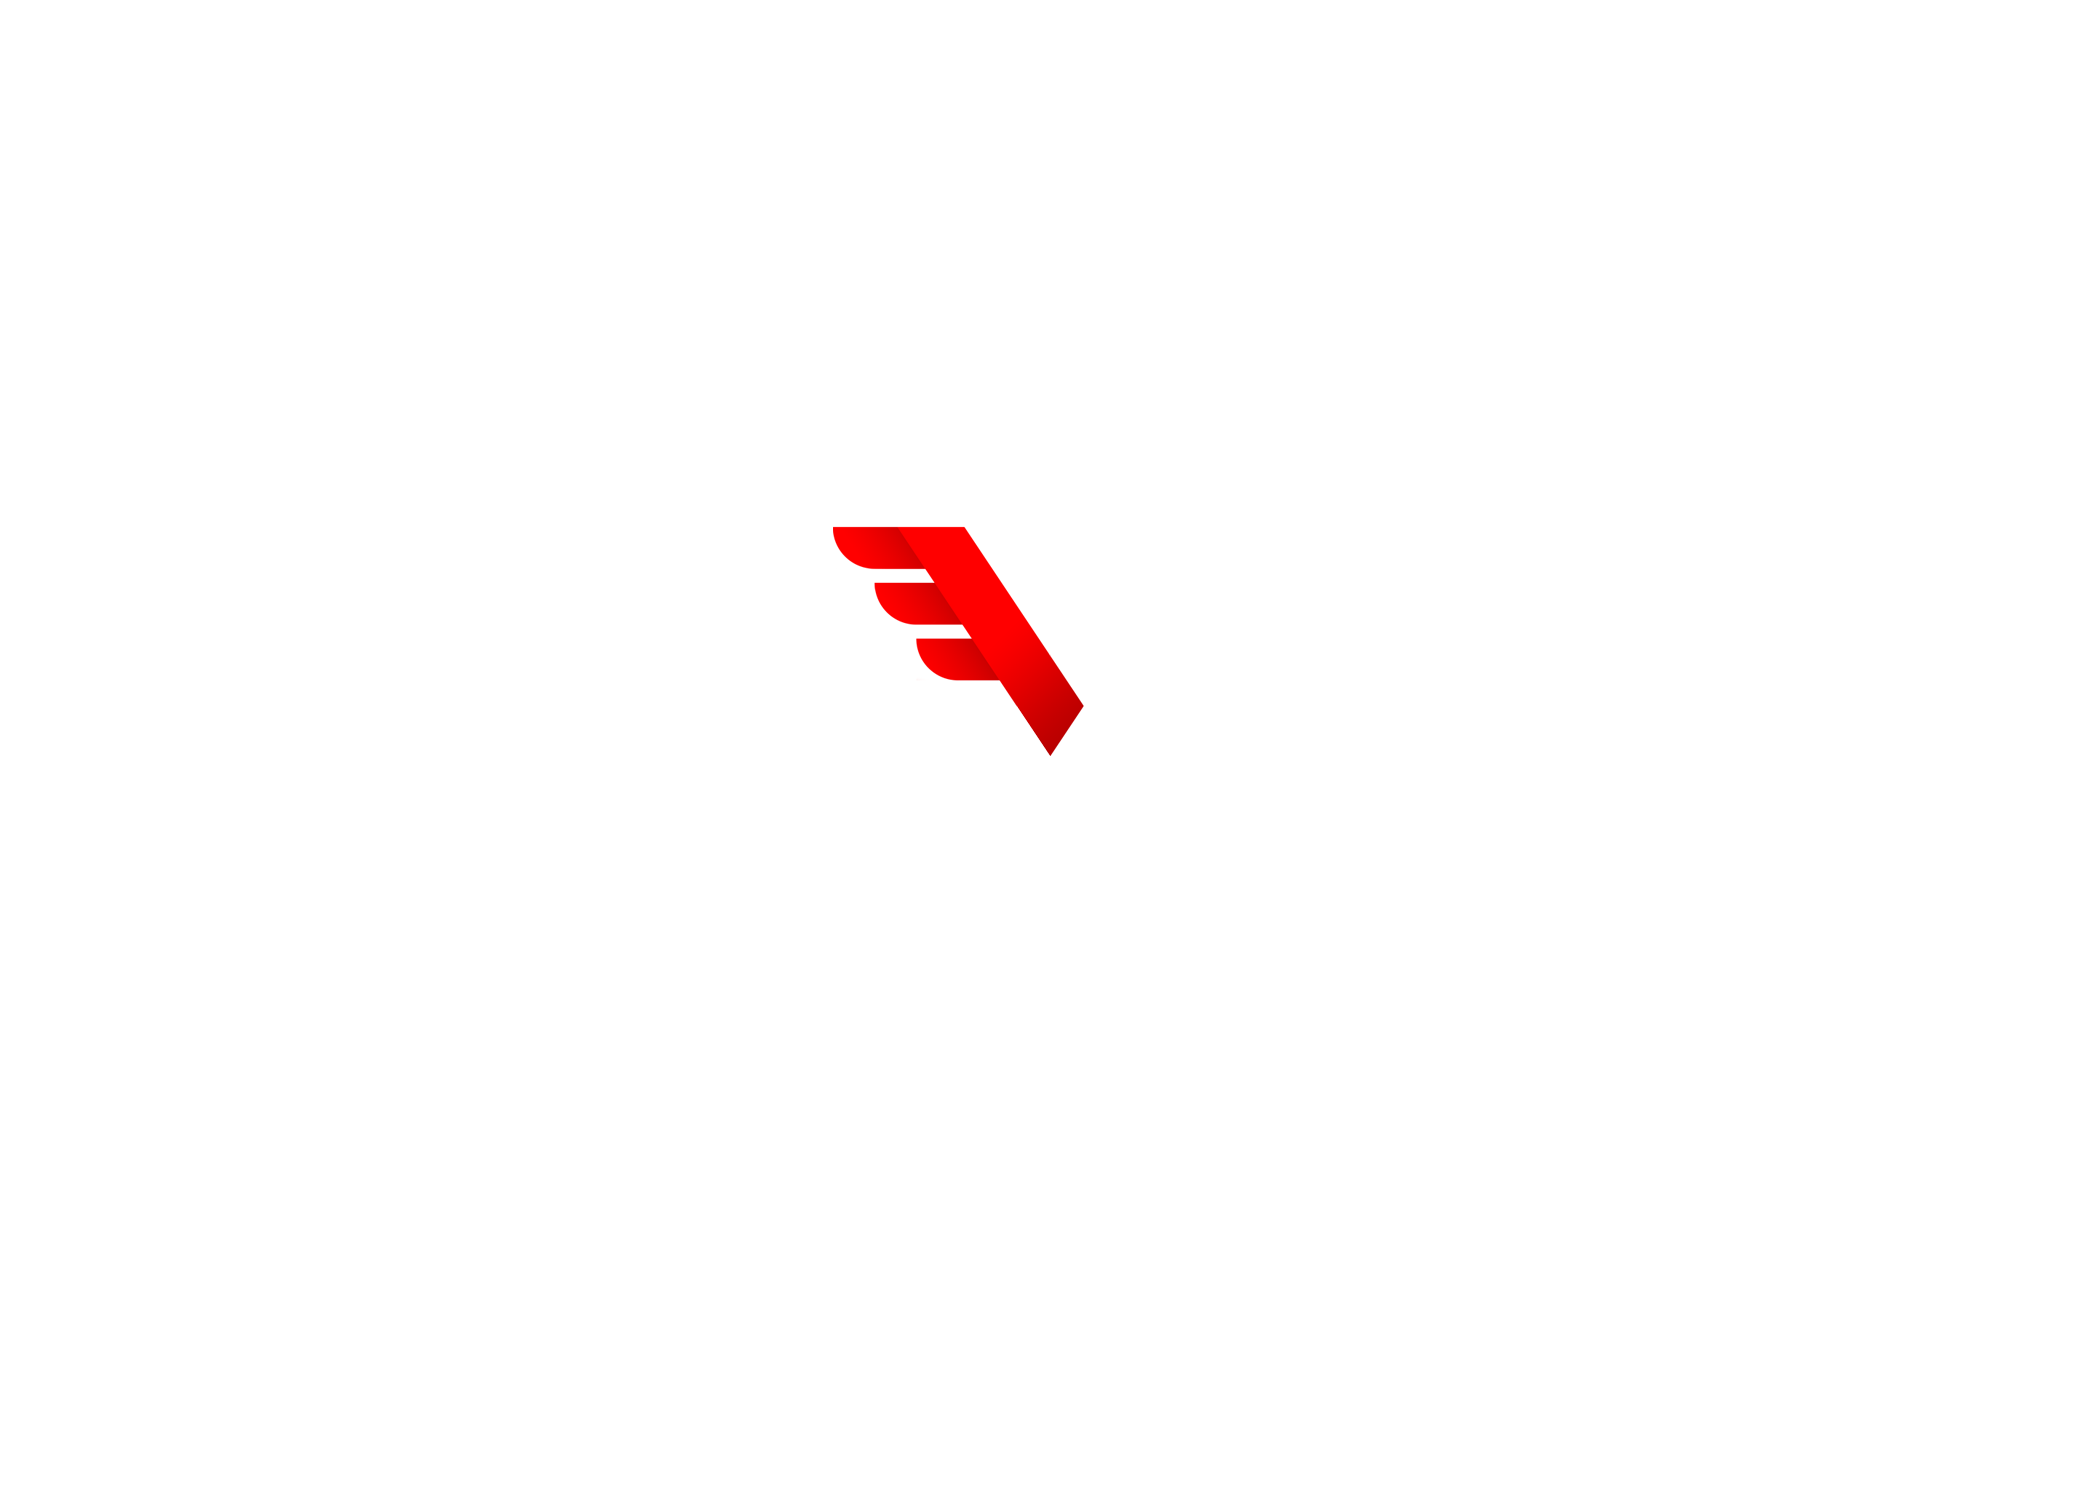 Valgee Co-operative Society